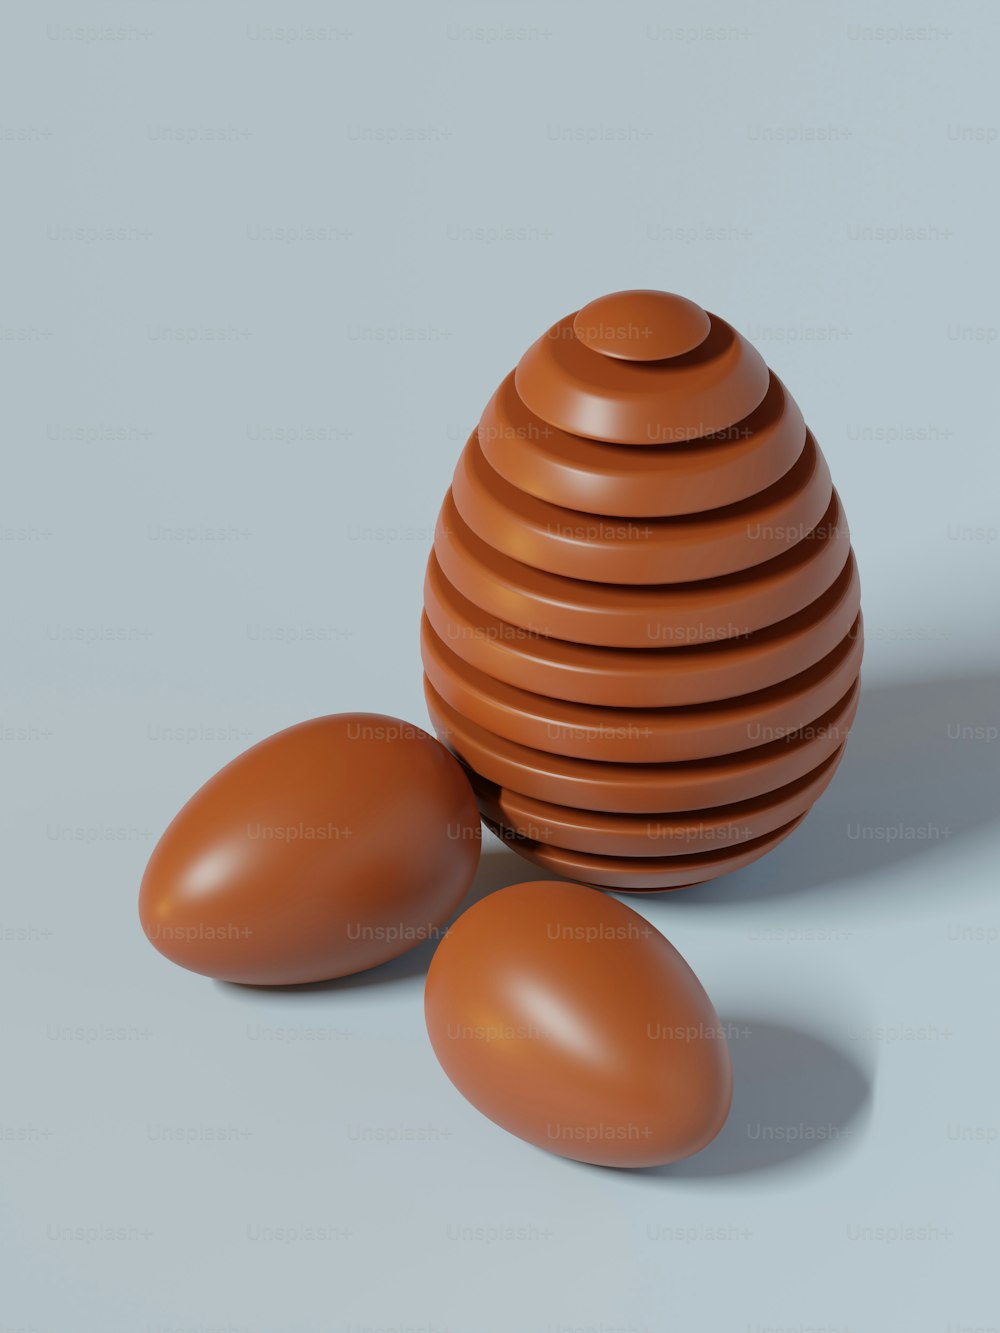 Un huevo marrón sentado encima de una pila de huevos marrones